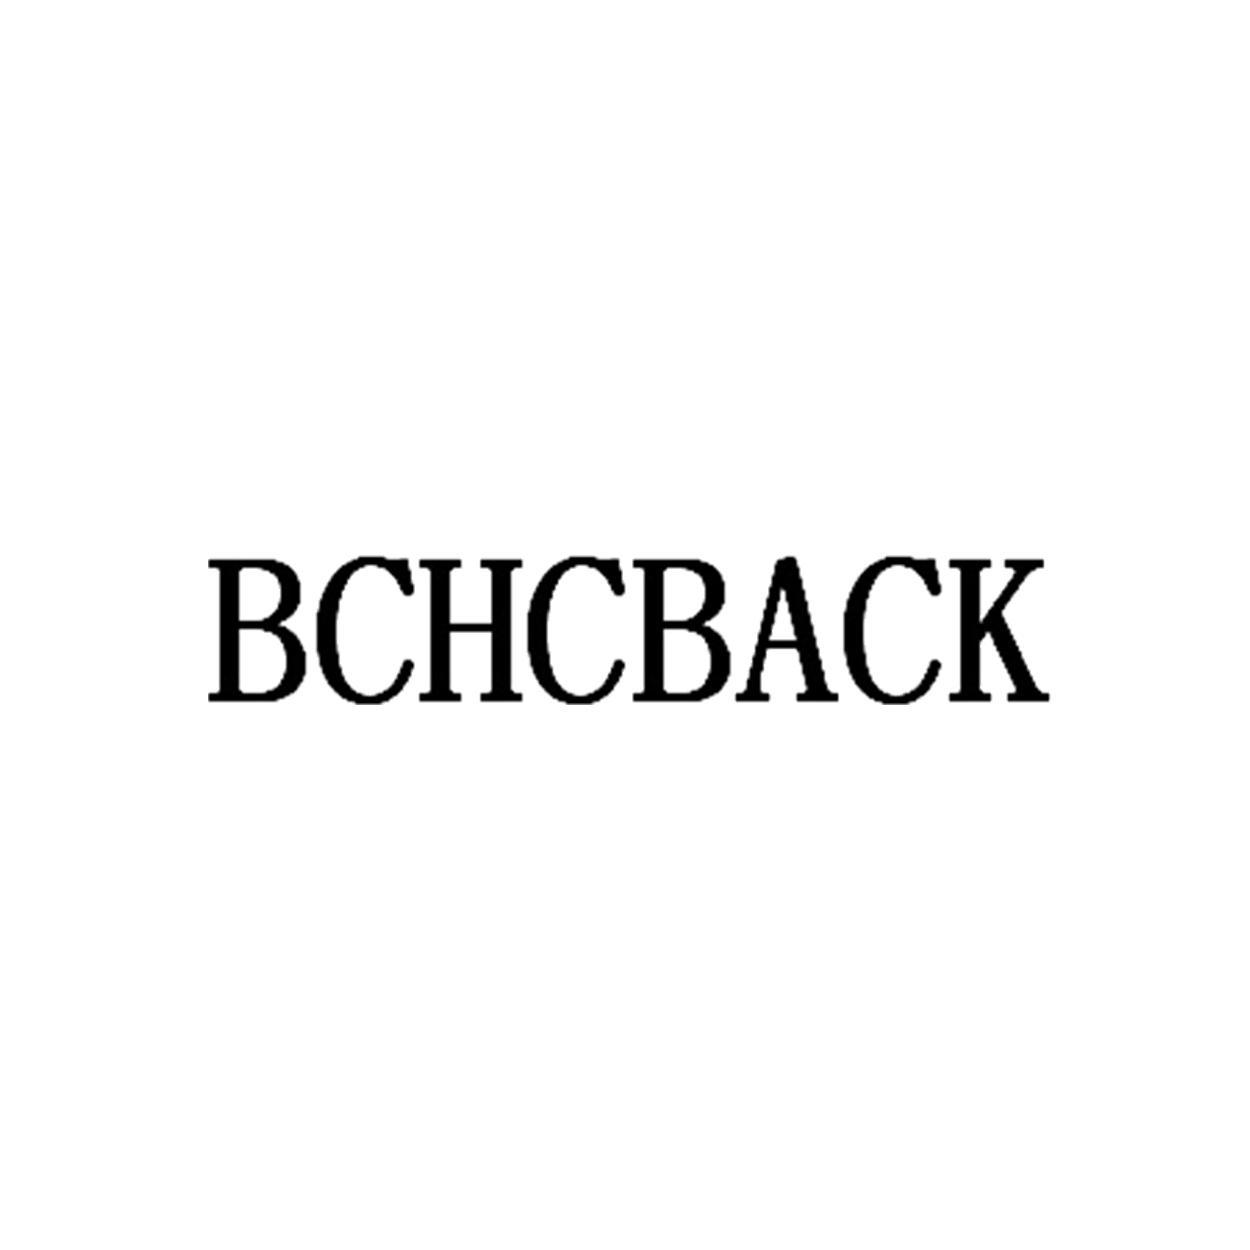 BCHCBACK